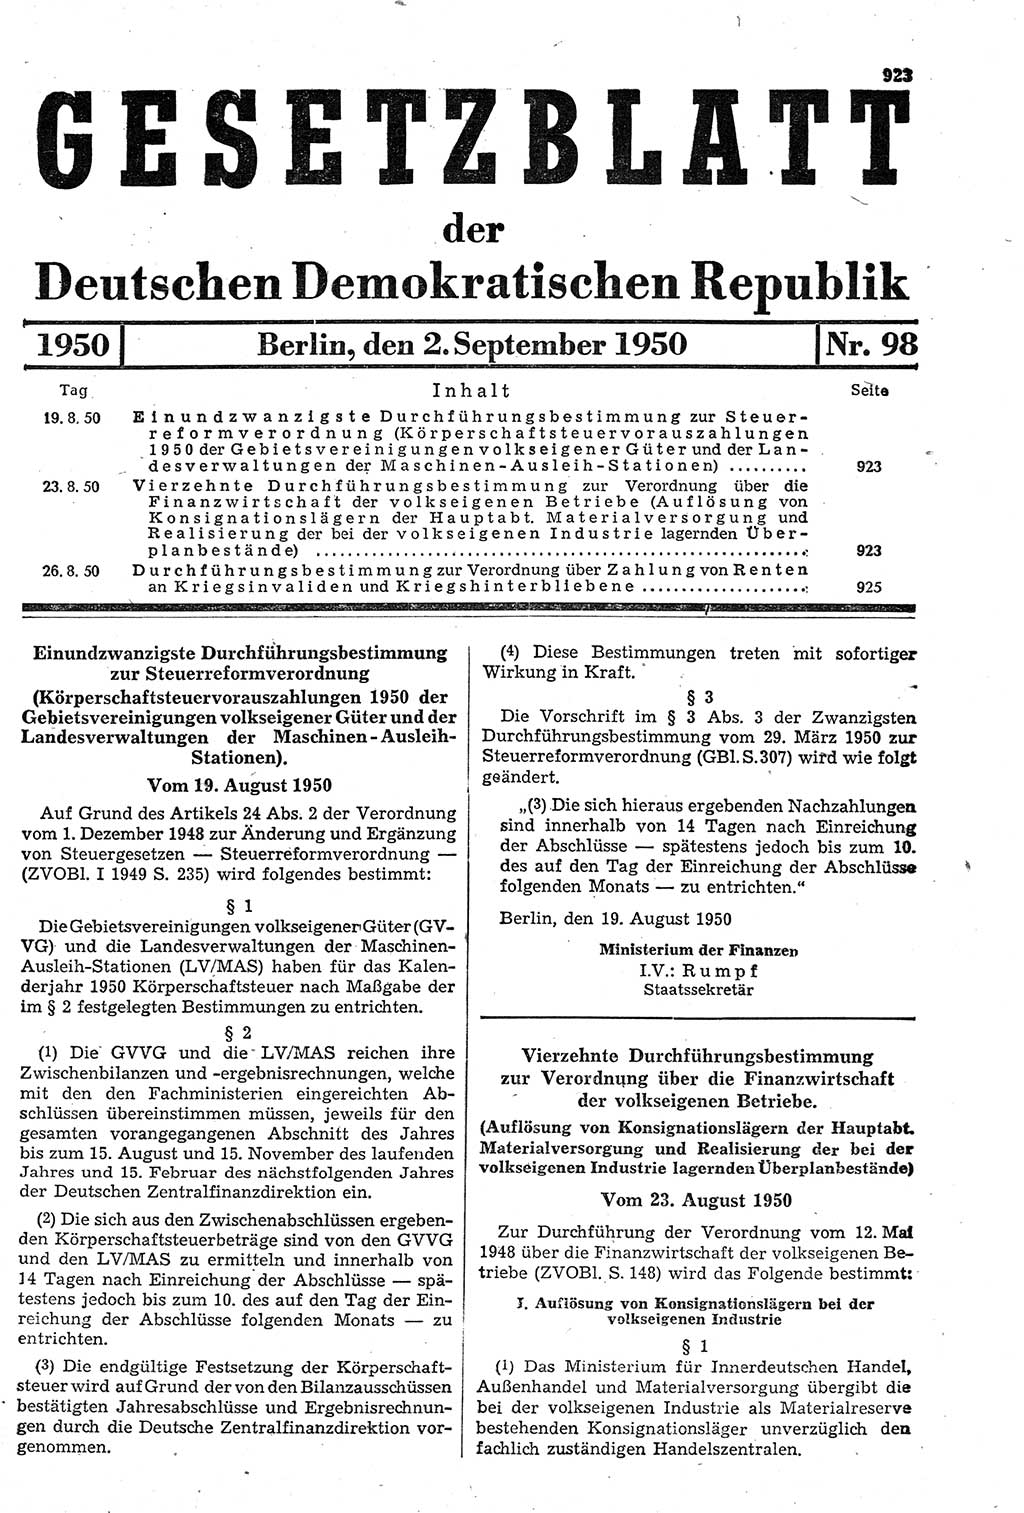 Gesetzblatt (GBl.) der Deutschen Demokratischen Republik (DDR) 1950, Seite 923 (GBl. DDR 1950, S. 923)